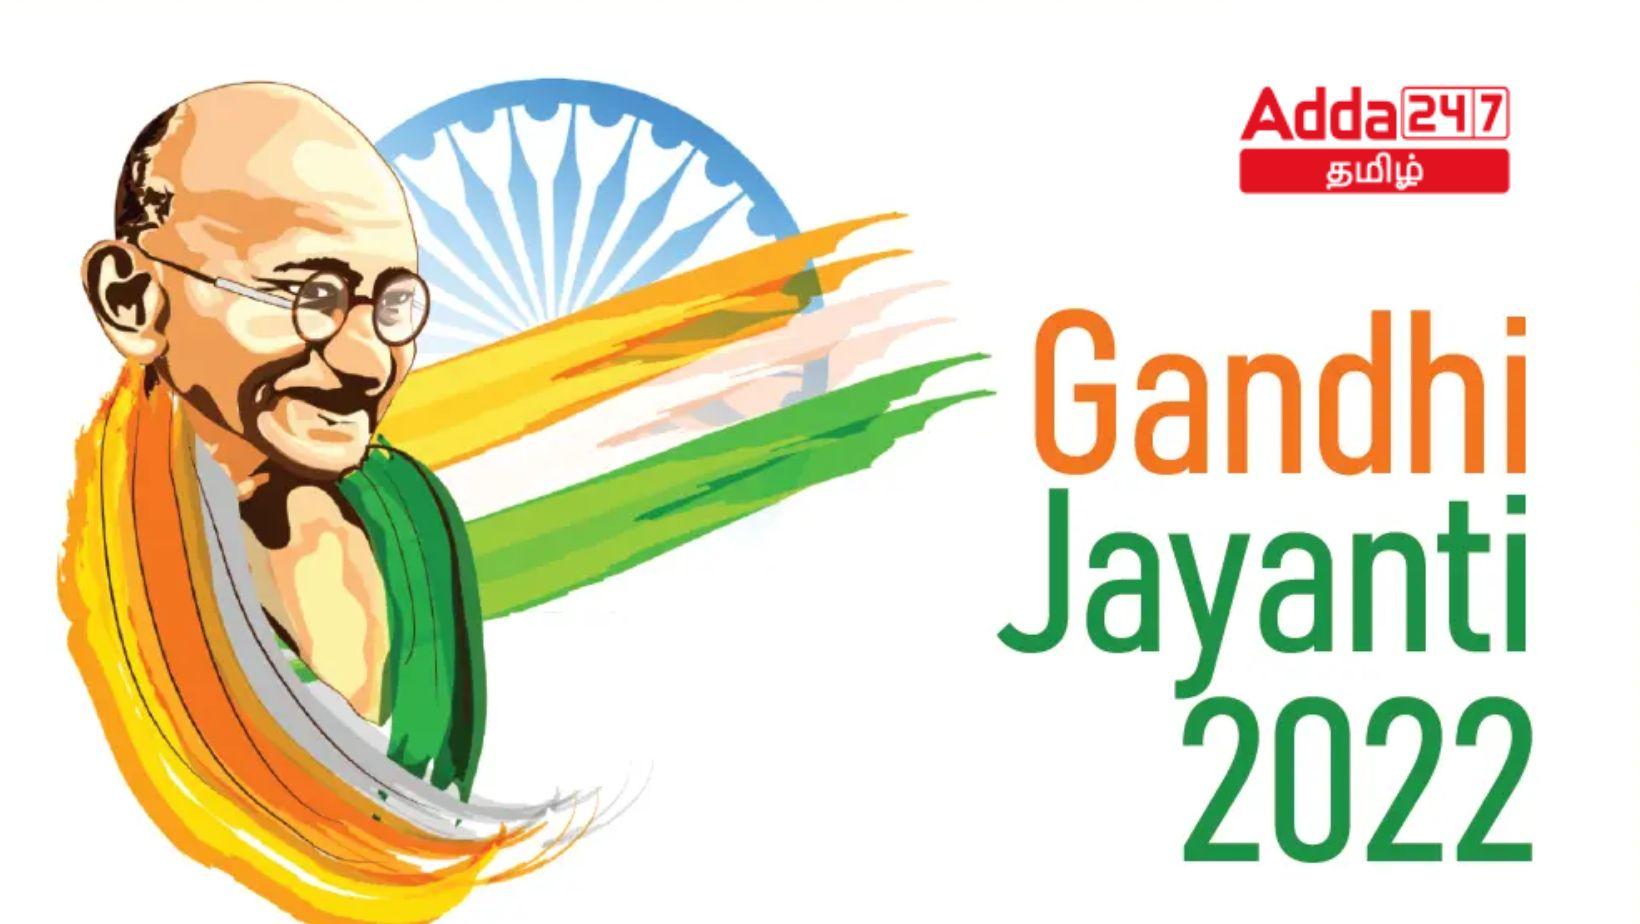 Happy Gandhi Jayanti | காந்தி ஜெயந்தி நல்வாழ்த்துக்கள்_30.1